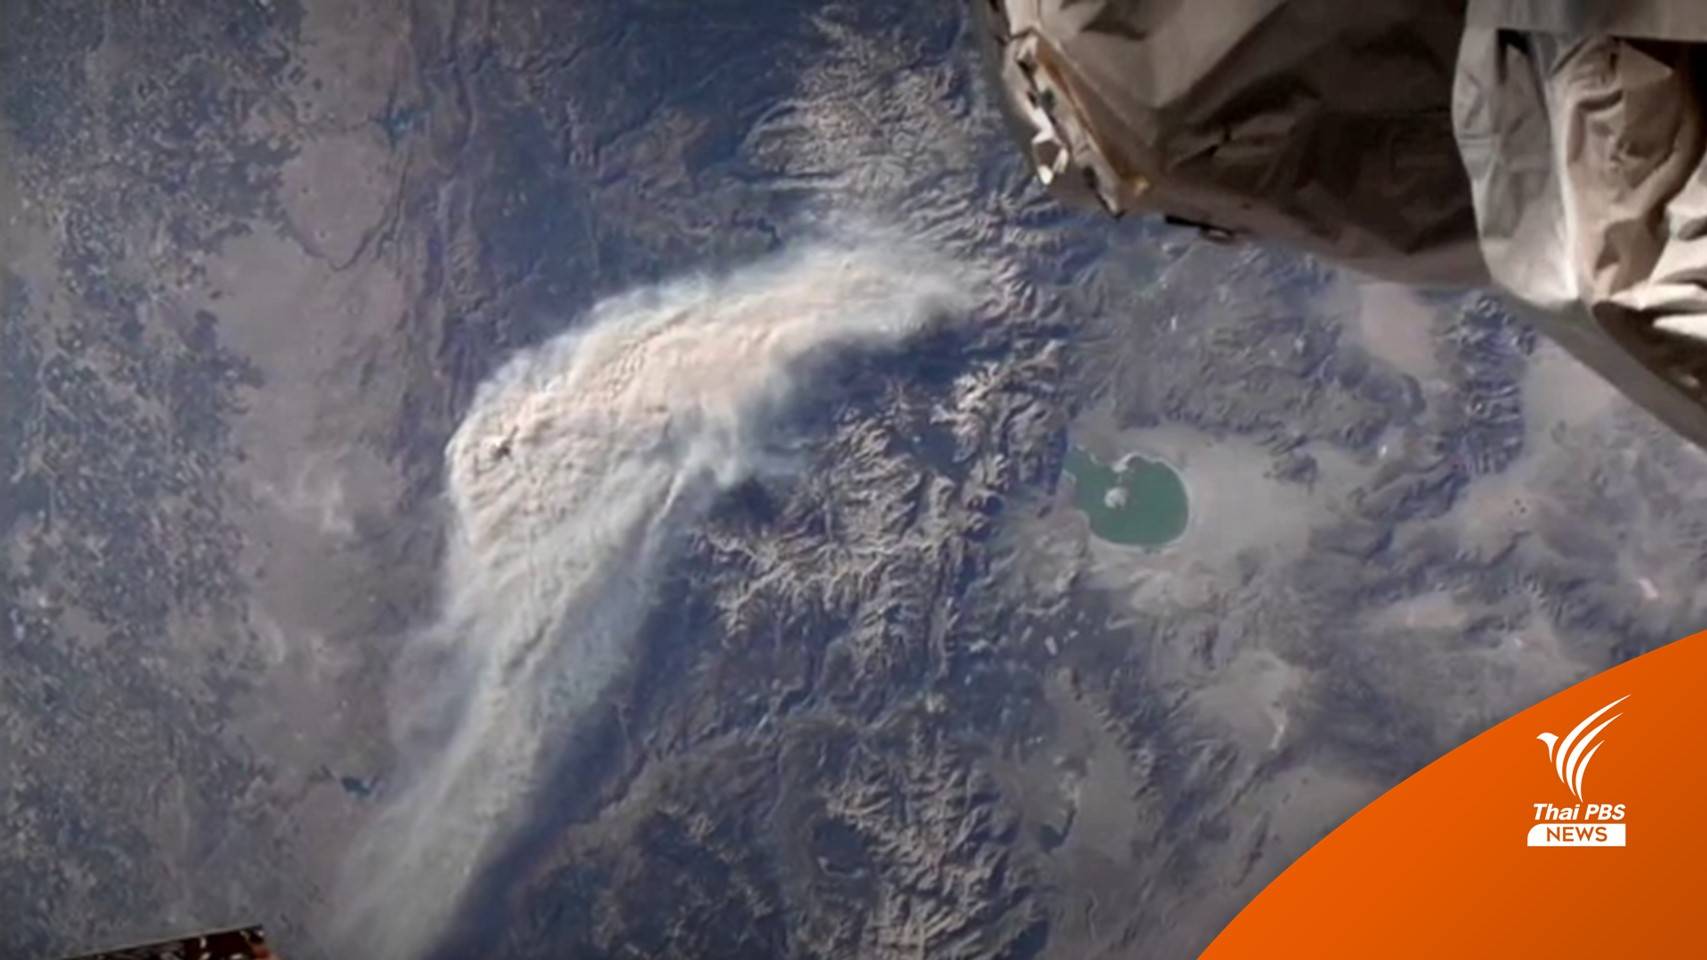 เปิดภาพ "ไฟป่า" รัฐแคลิฟอร์เนียจากอวกาศ พบกลุ่มควันขนาดใหญ่